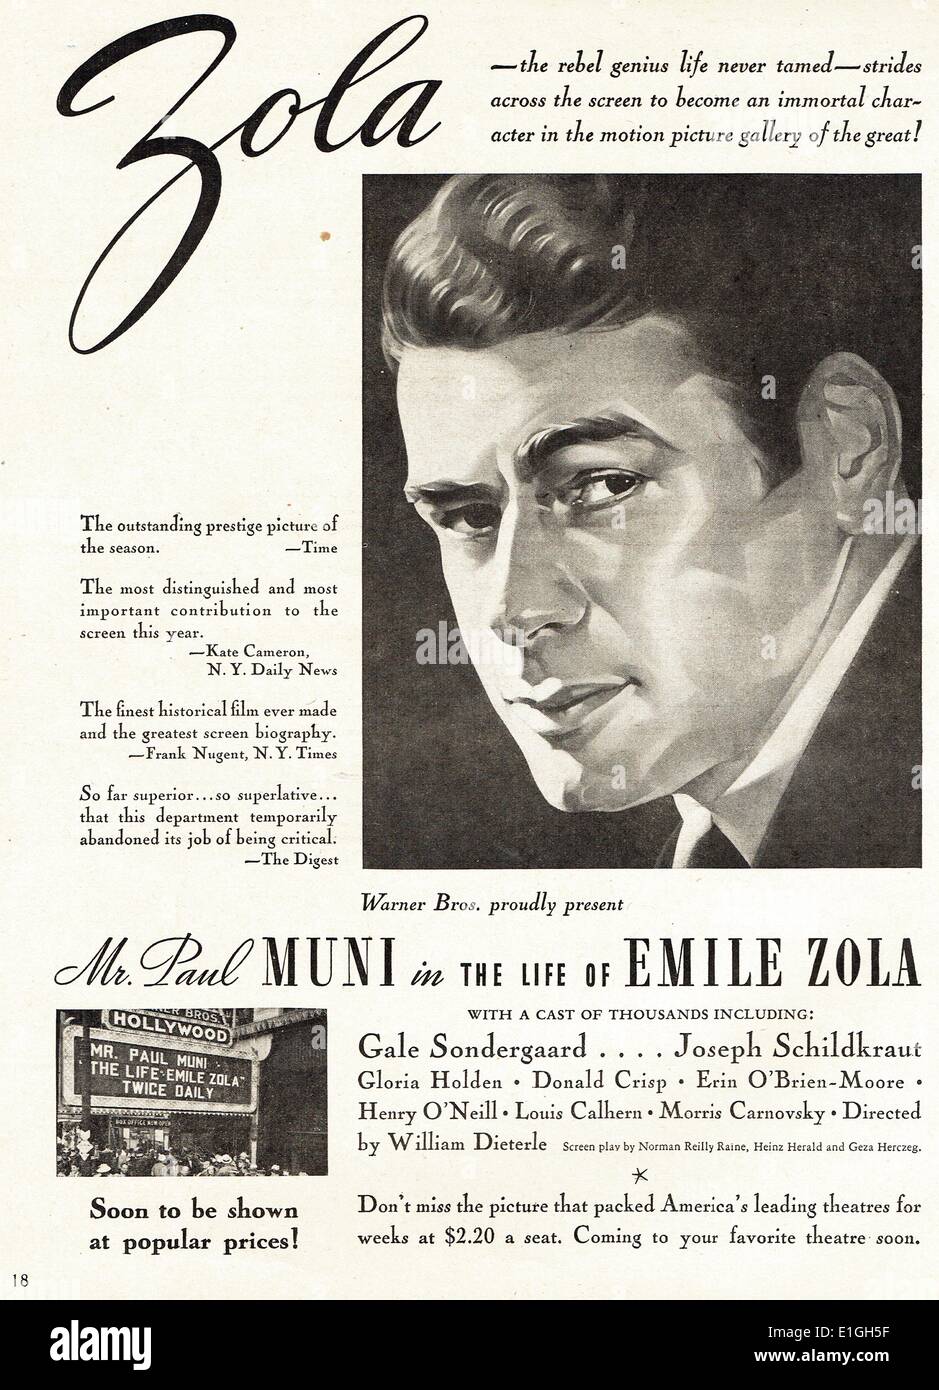 Das Leben des Emile Zola eine 1937 amerikanische biographische Film starring Paul Mundi. Stockfoto